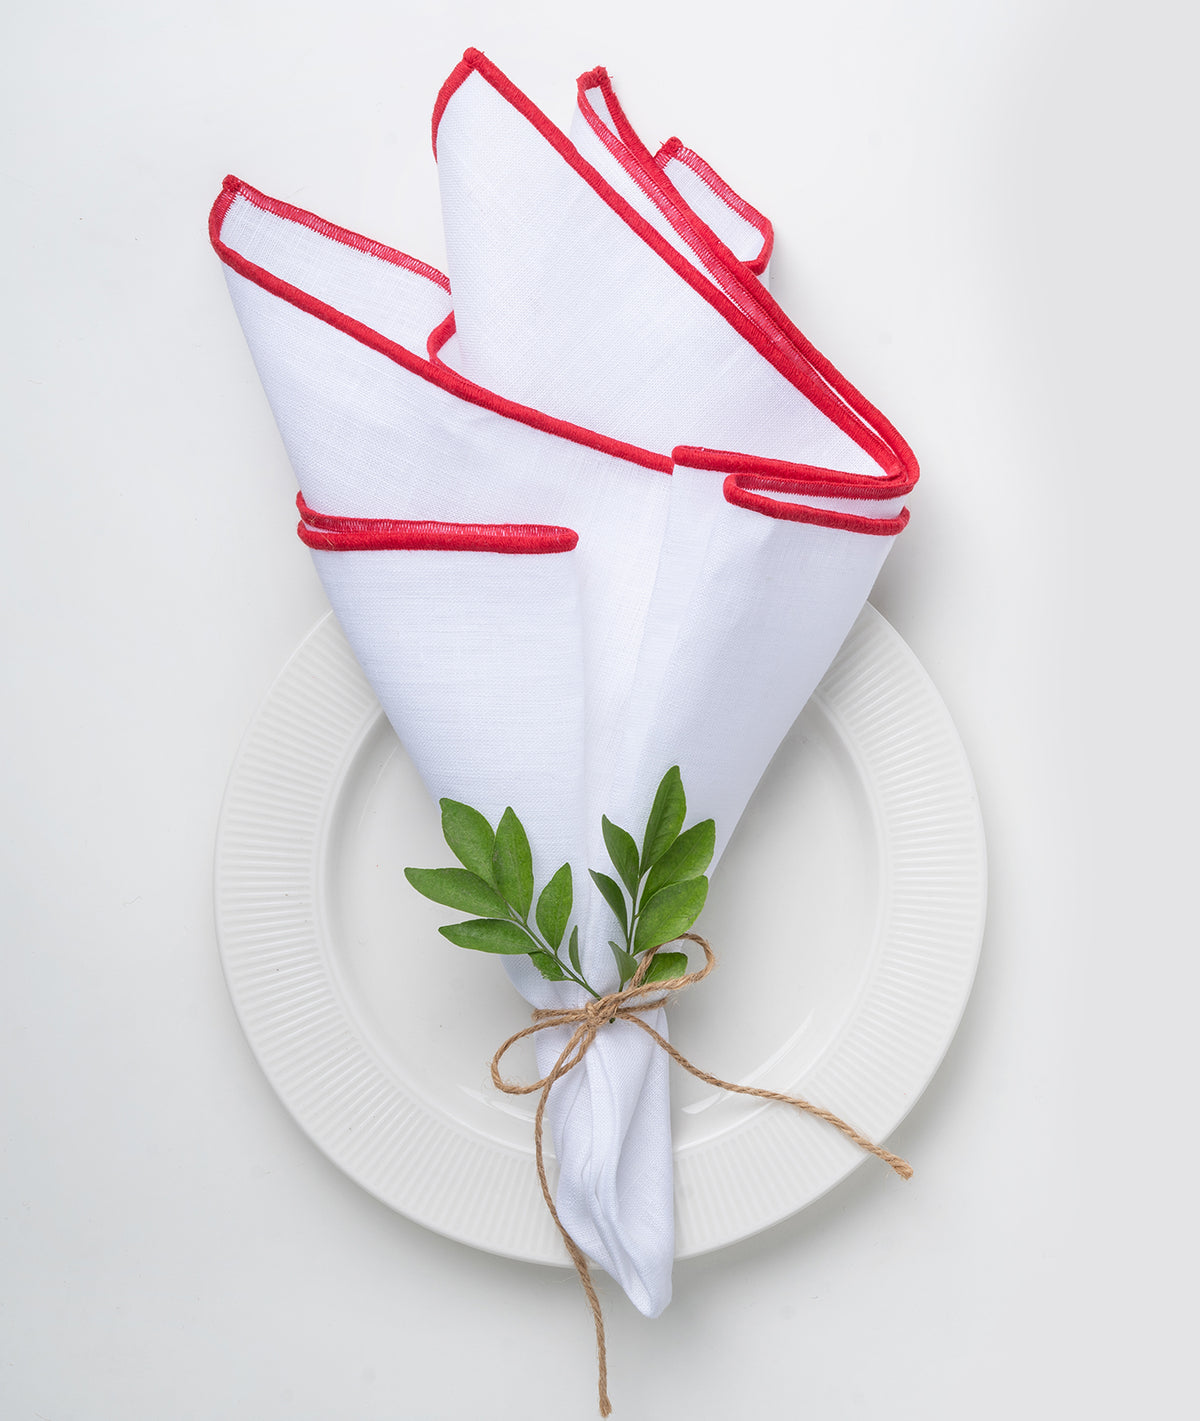 White & Red Linen Dinner Napkins 20 x 20 Inch Set of 4 - Marrow Edge